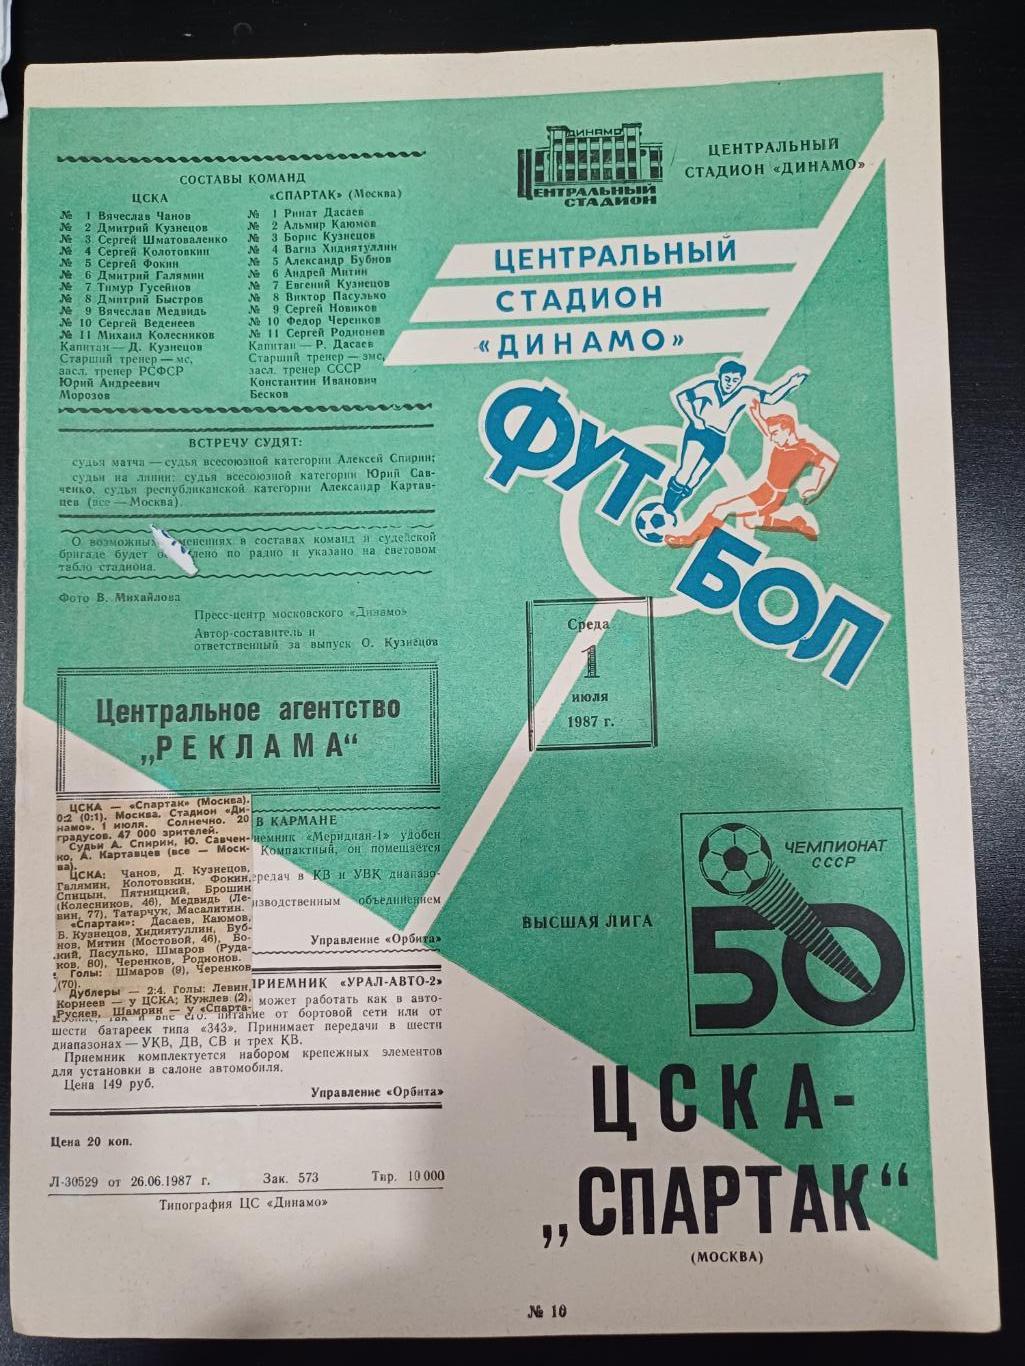 Цска - Спартак 1987